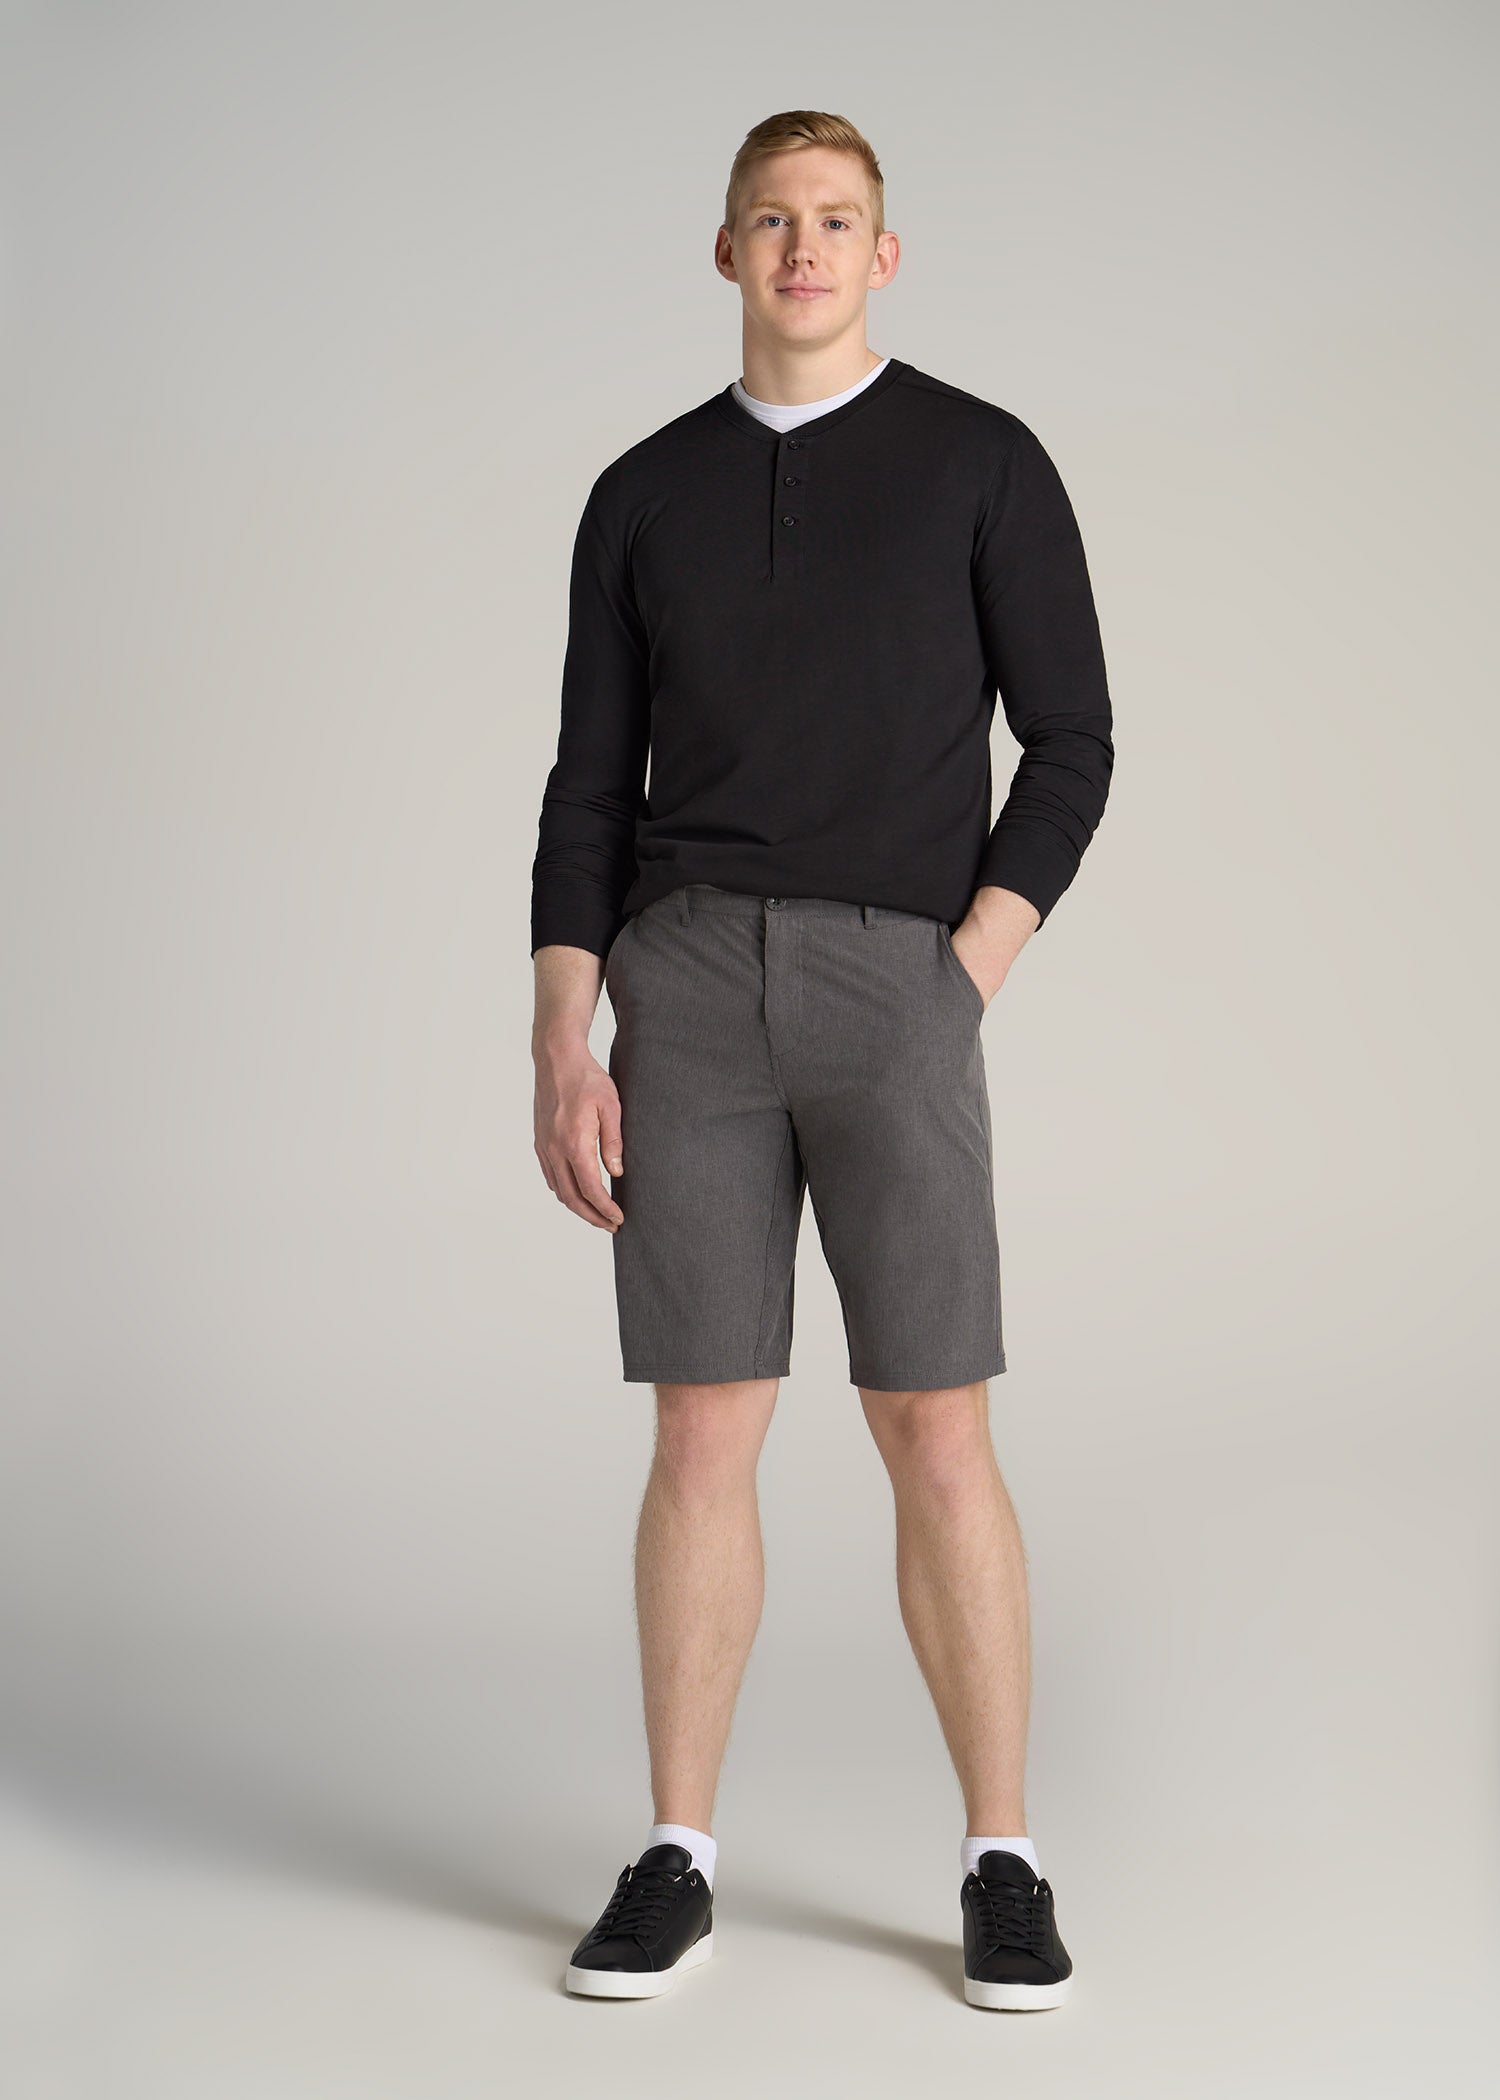 Hybrid Shorts for Tall Men